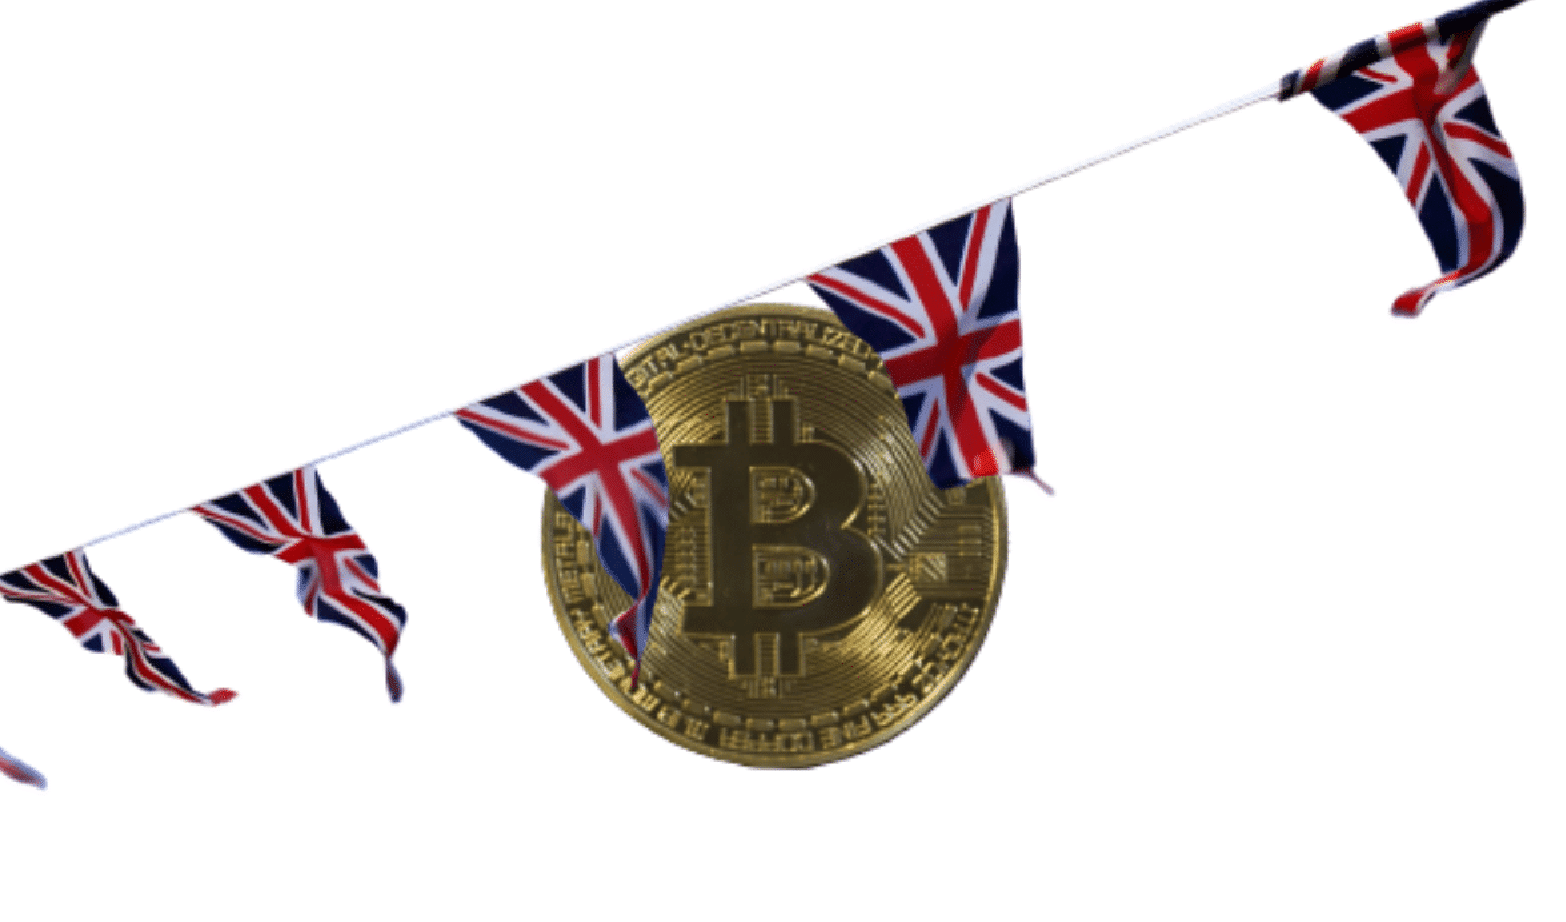 Cryptomonnaies : Un pari risqué ? L'initiative courageuse des législateurs britanniques